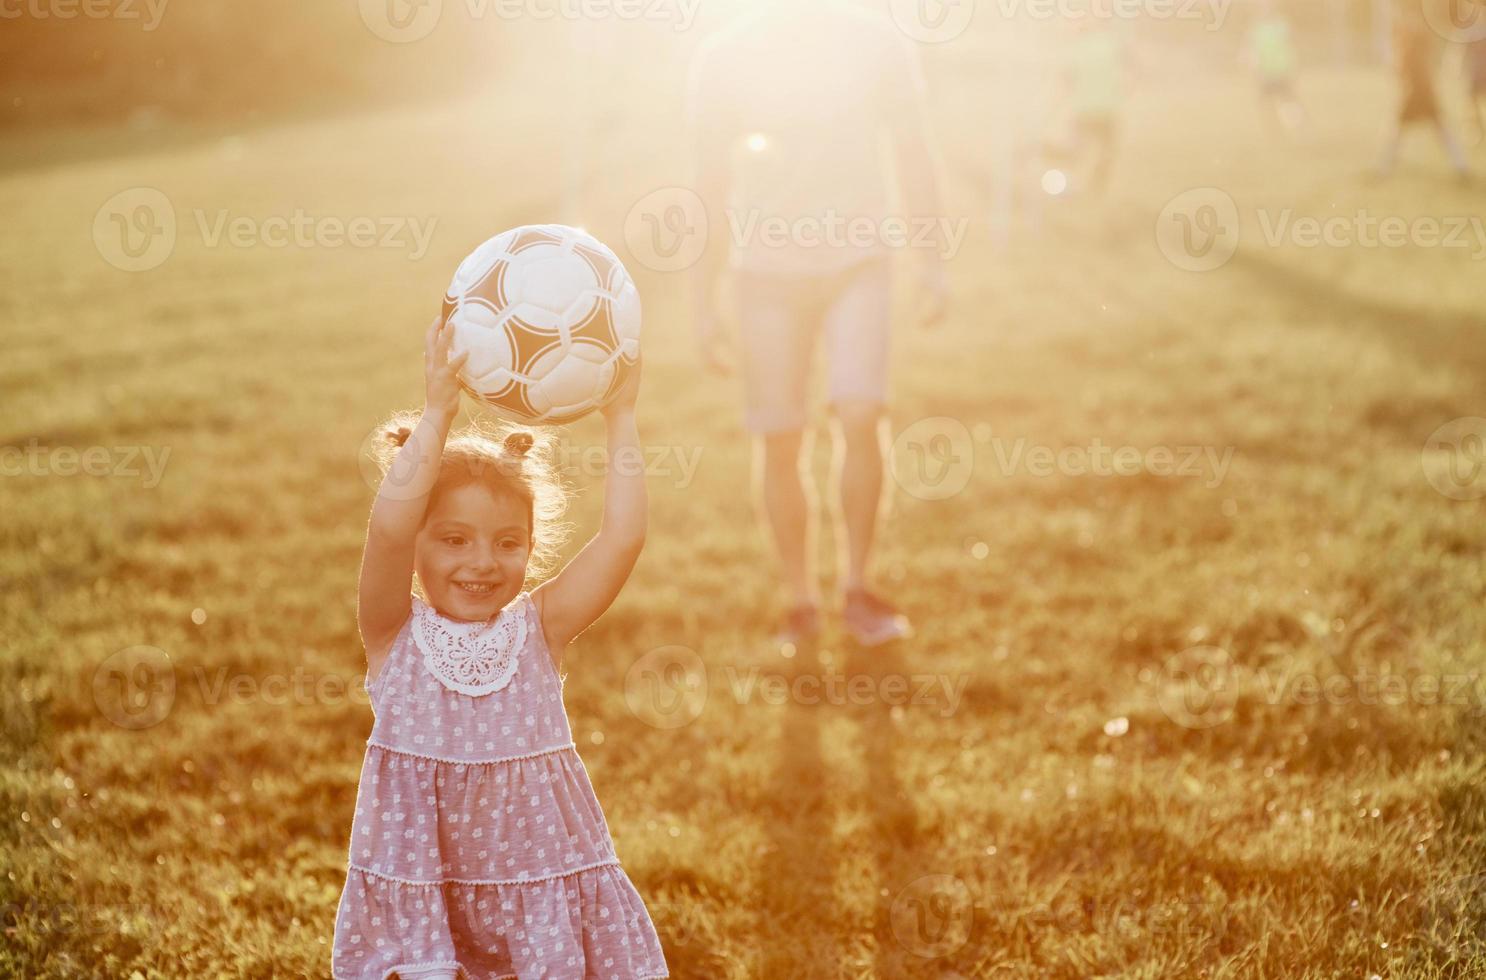 Podemos trapacear às vezes. as mãos são bem-vindas. pai entusiasmado ensina  a filha como jogar seu jogo favorito. é futebol e até as meninas podem jogar.